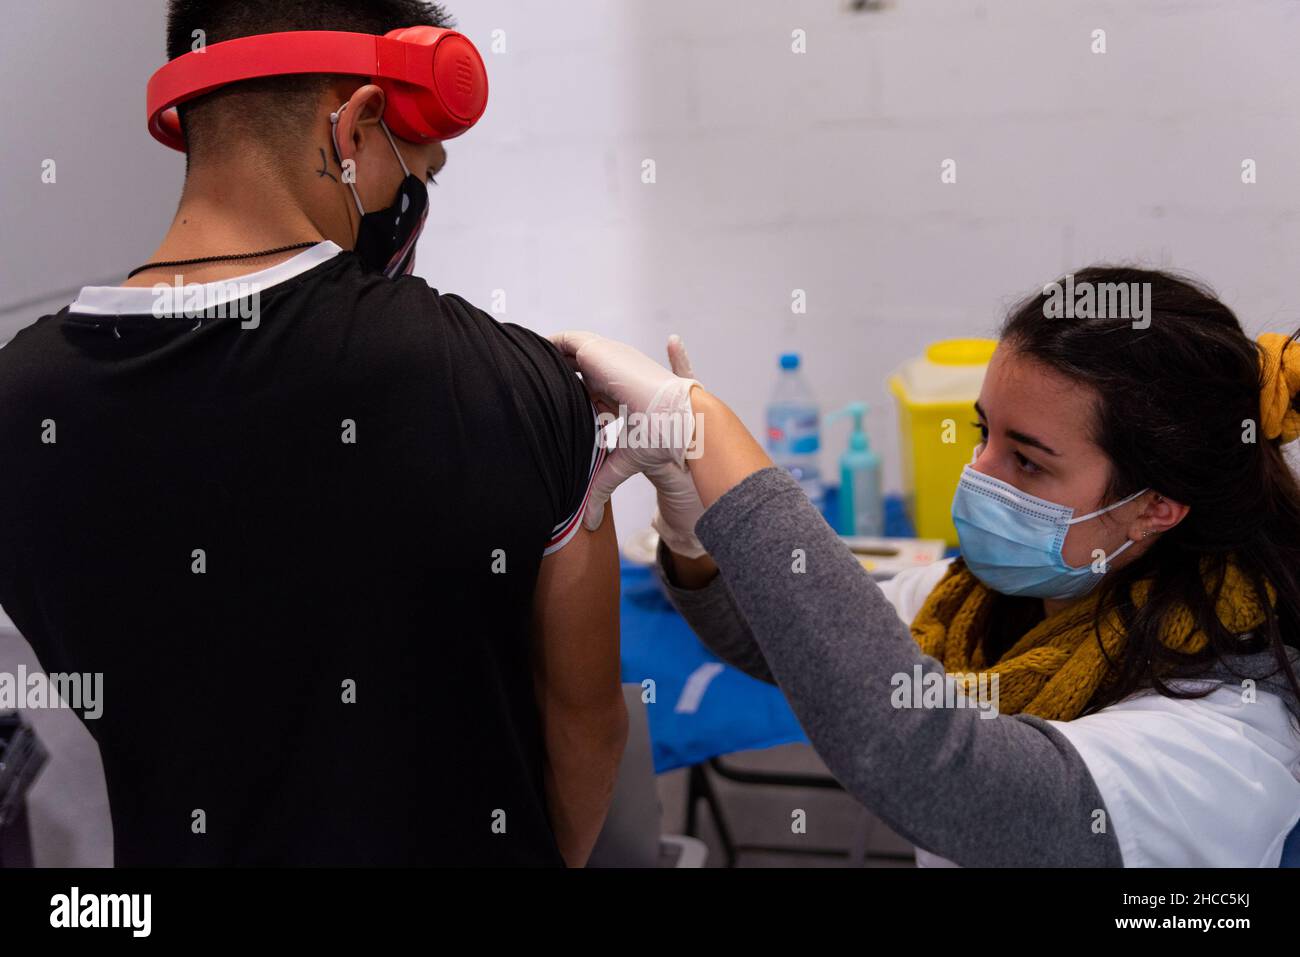 Ein junger Teenager, der Kopfhörer trägt, erhält am 22. Dezember 2021 in einem Impfzentrum in Barcelona, Spanien, eine Dosis Covid-19-Impfstoff. Stockfoto